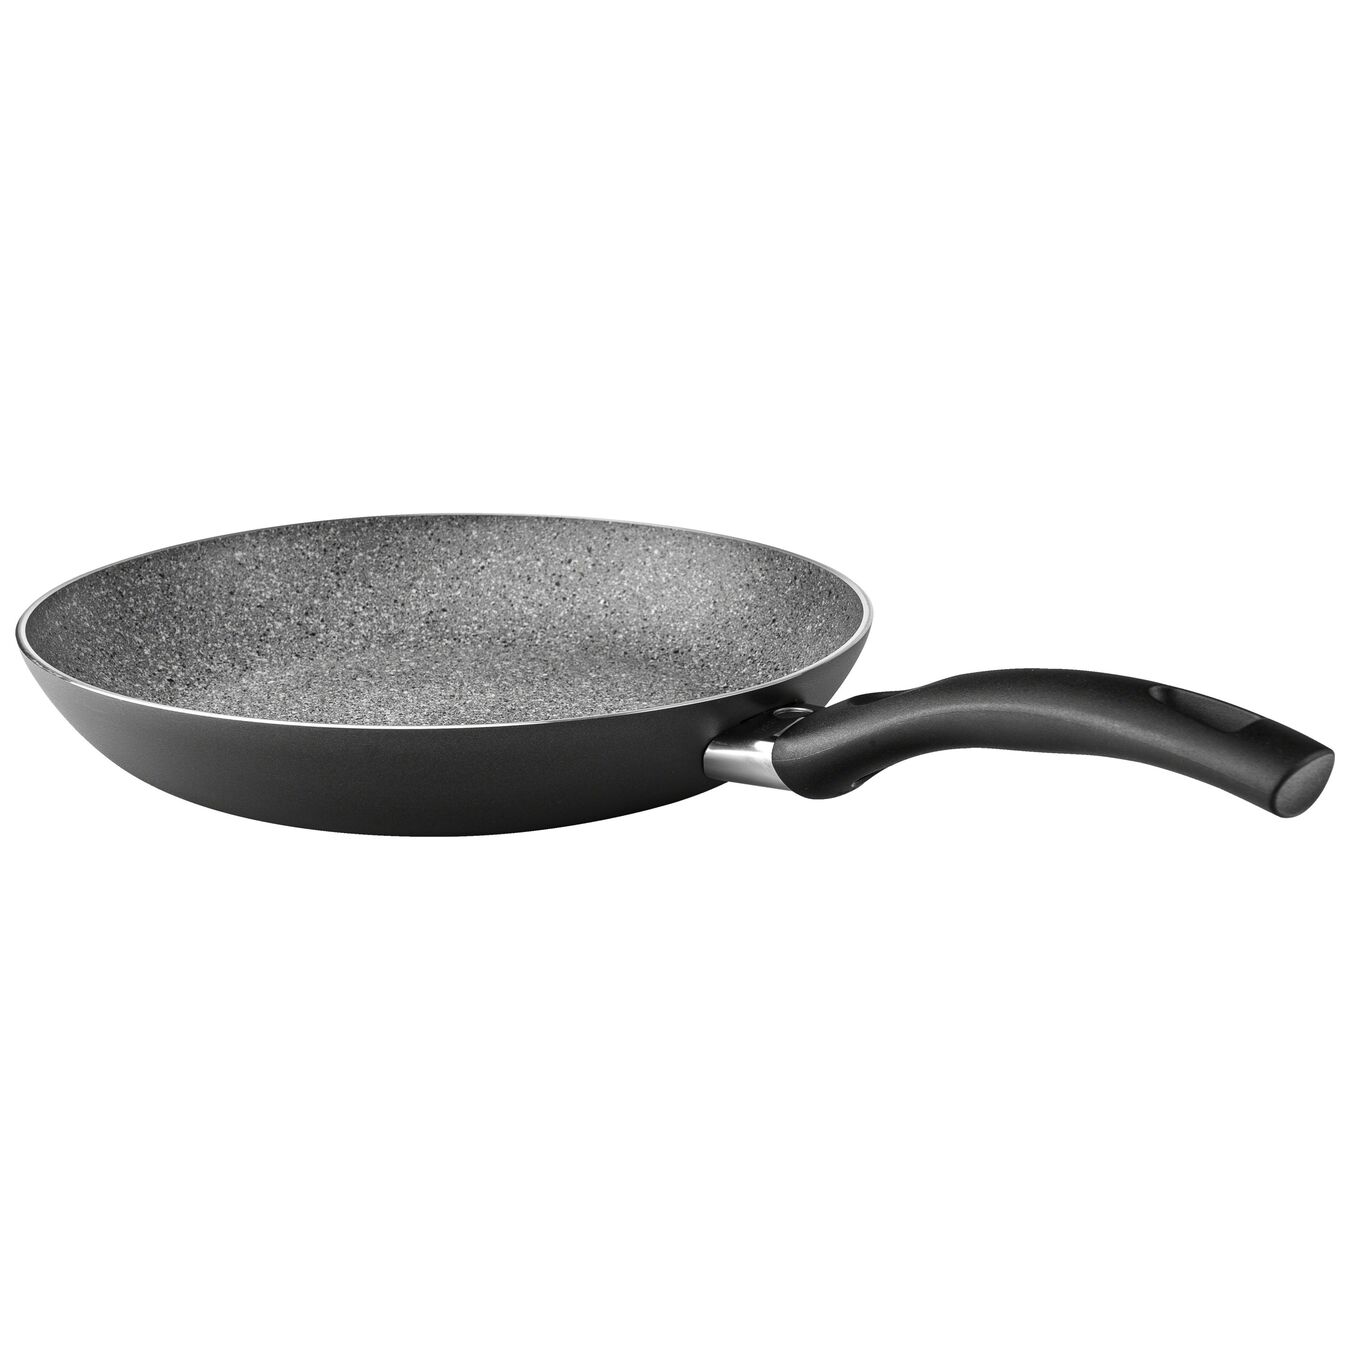 28 cm Aluminium Frying pan black,,large 1